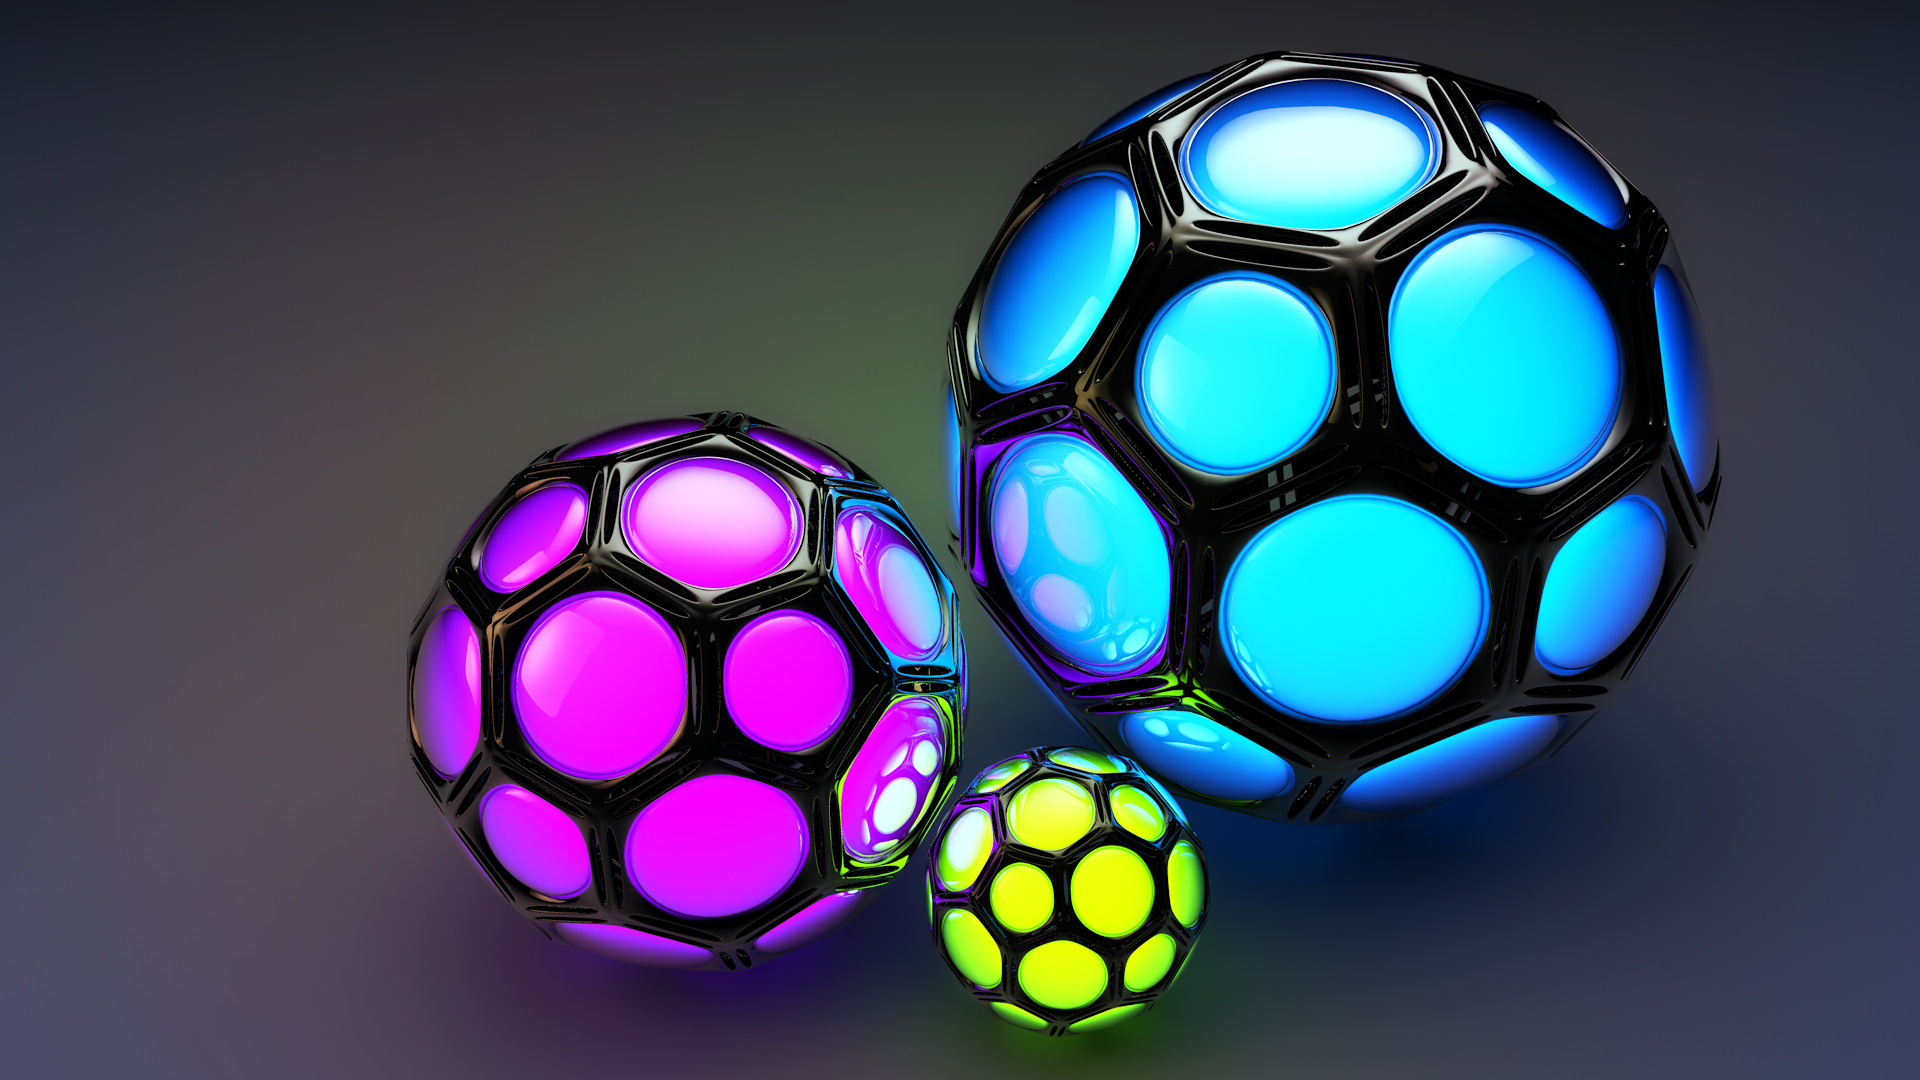 3d ball wallpaper,ball,soccer ball,purple,light,ball